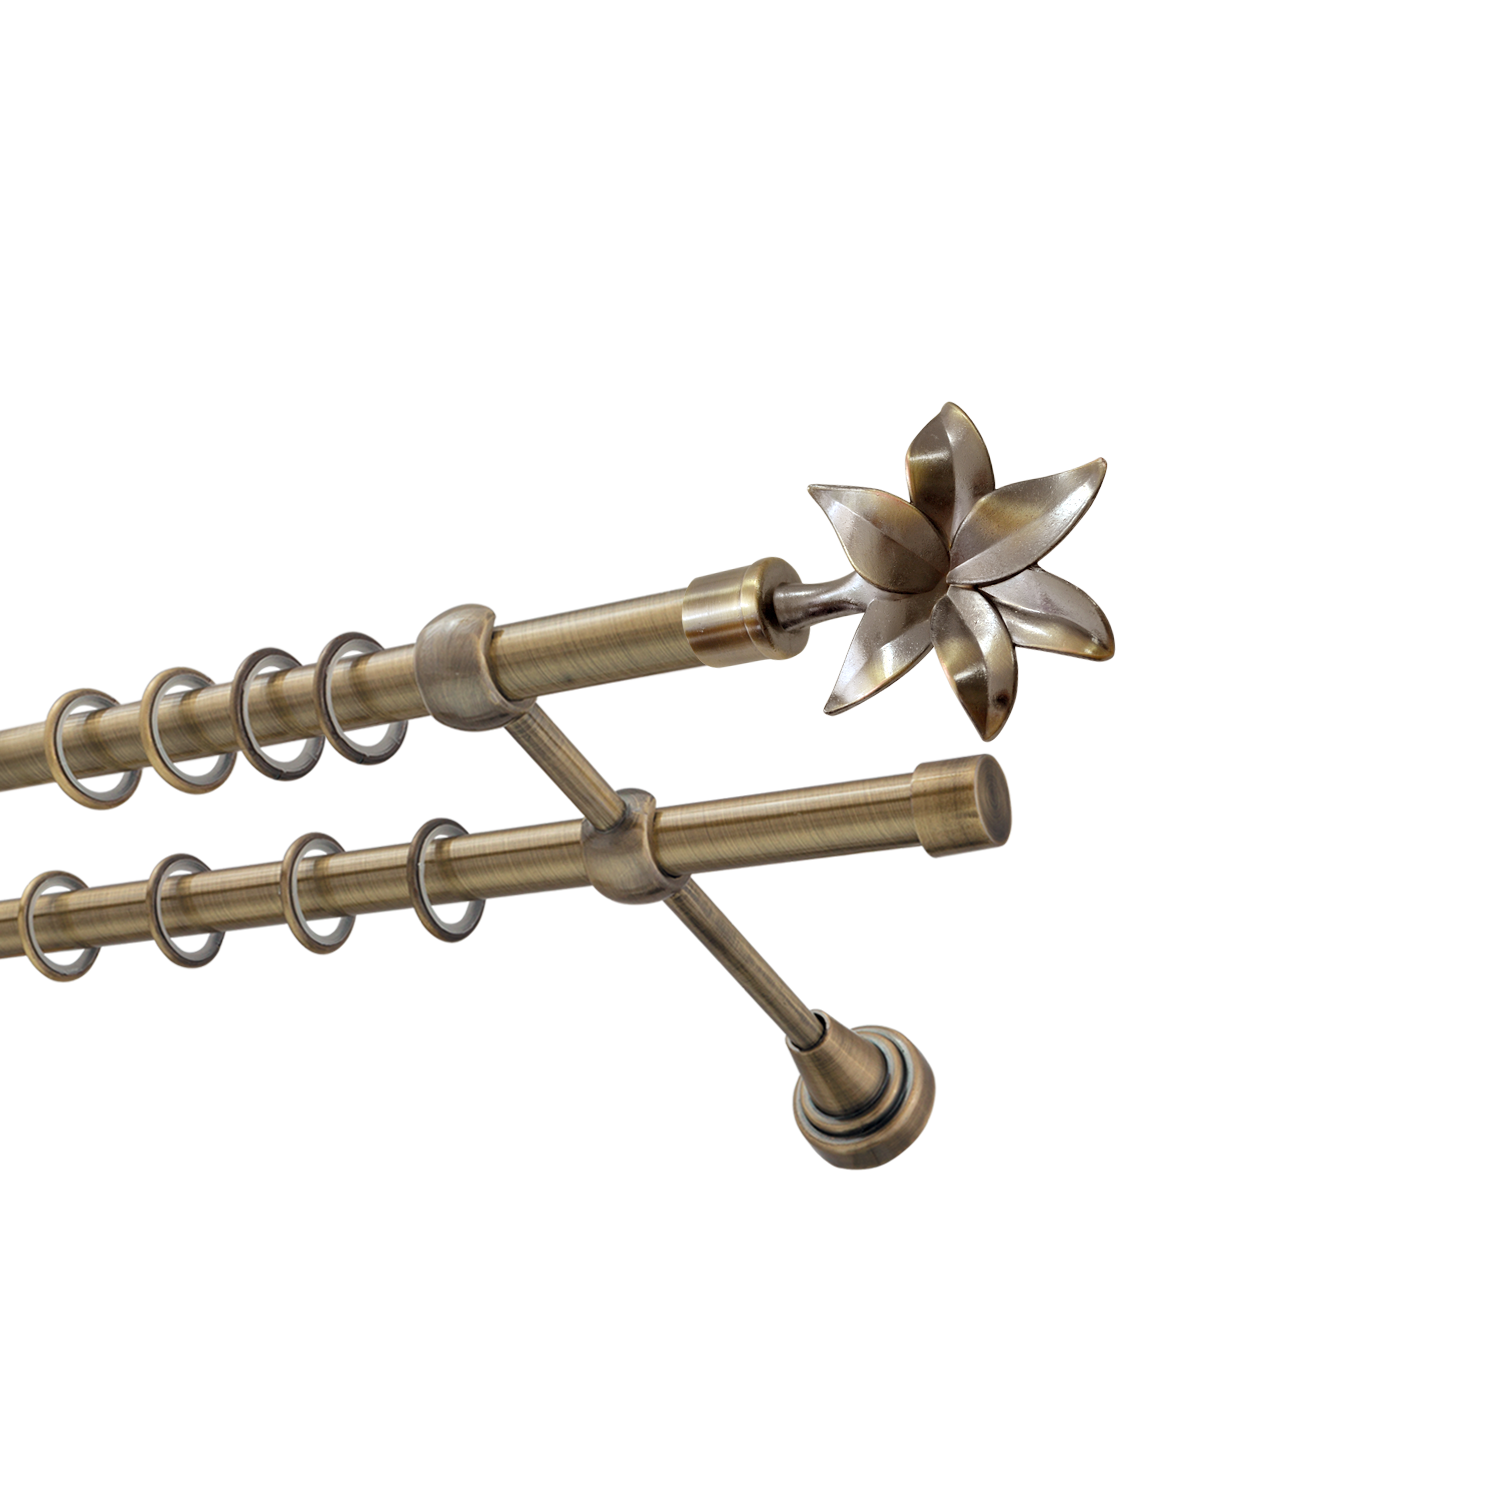 Металлический карниз для штор Магнолия, двухрядный 16/16 мм, бронза, гладкая штанга, длина 240 см - фото Wikidecor.ru